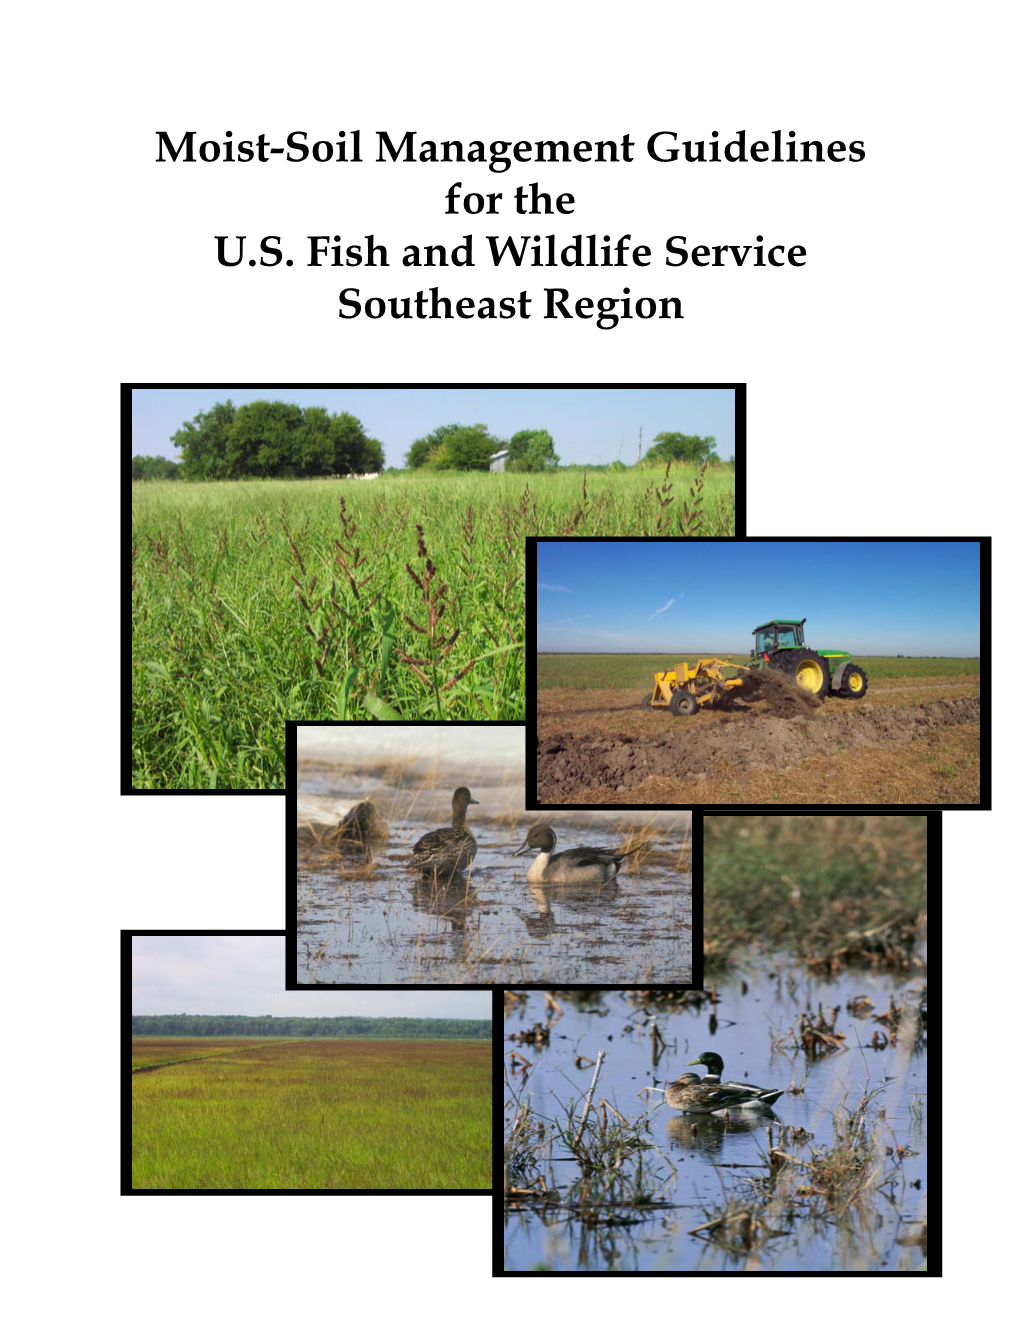 Moist-Soil Management Guidelines for the U.S